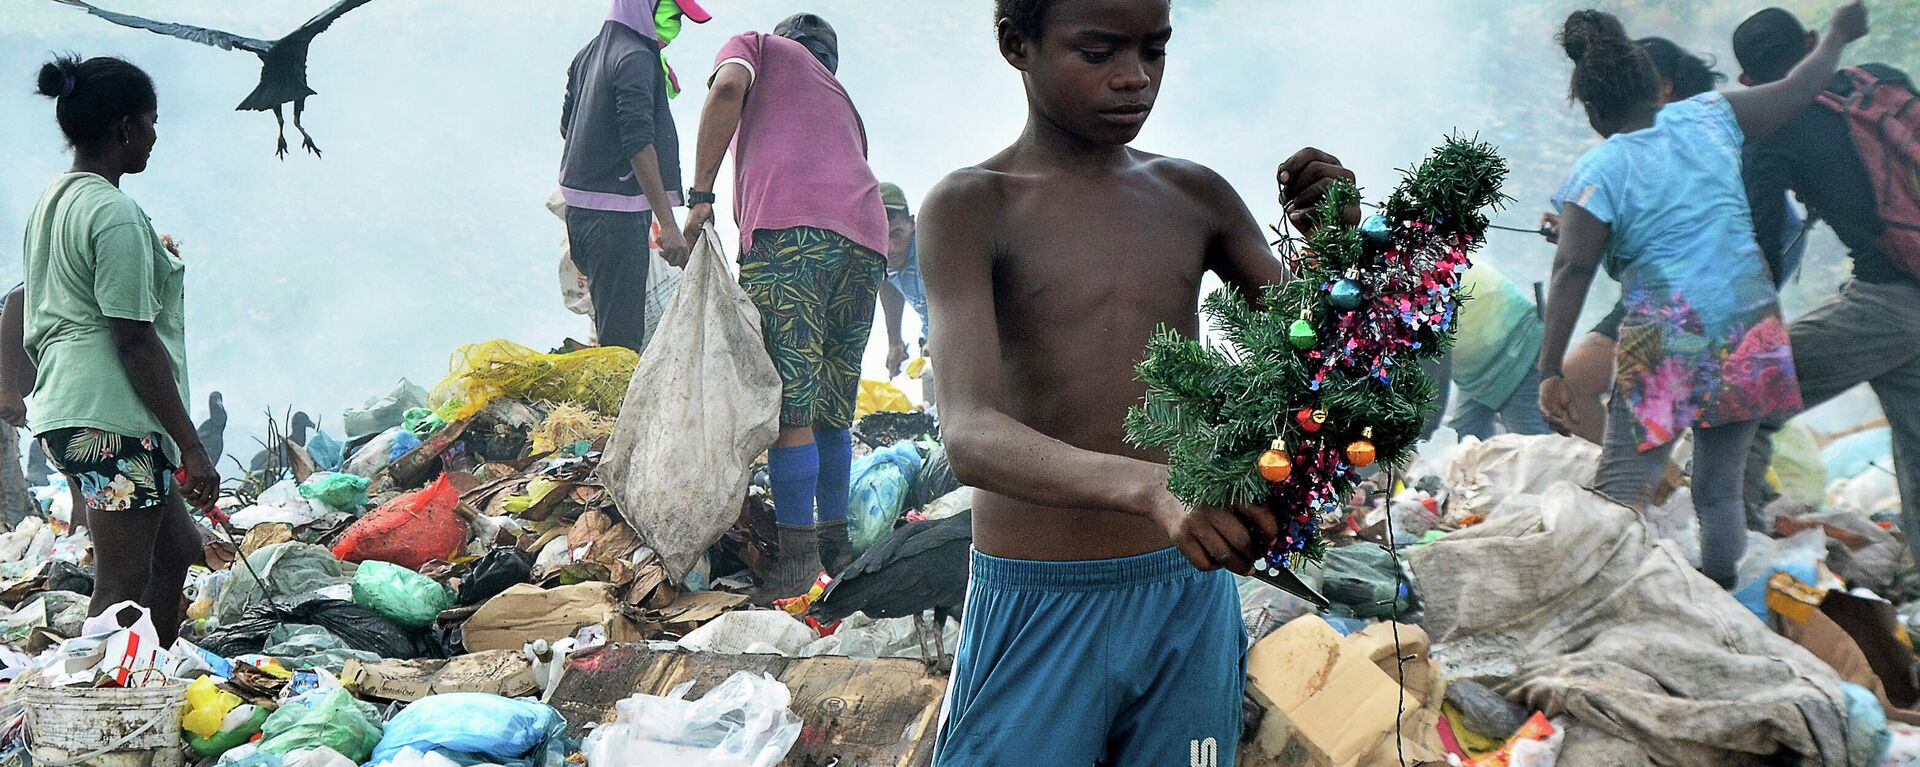 Menino segura uma decoração de Natal que encontrou enquanto vasculhava o lixo no aterro de Picarreira, em Pinheiro, estado do Maranhão, em 08 de novembro de 2021 - Sputnik Brasil, 1920, 27.12.2021